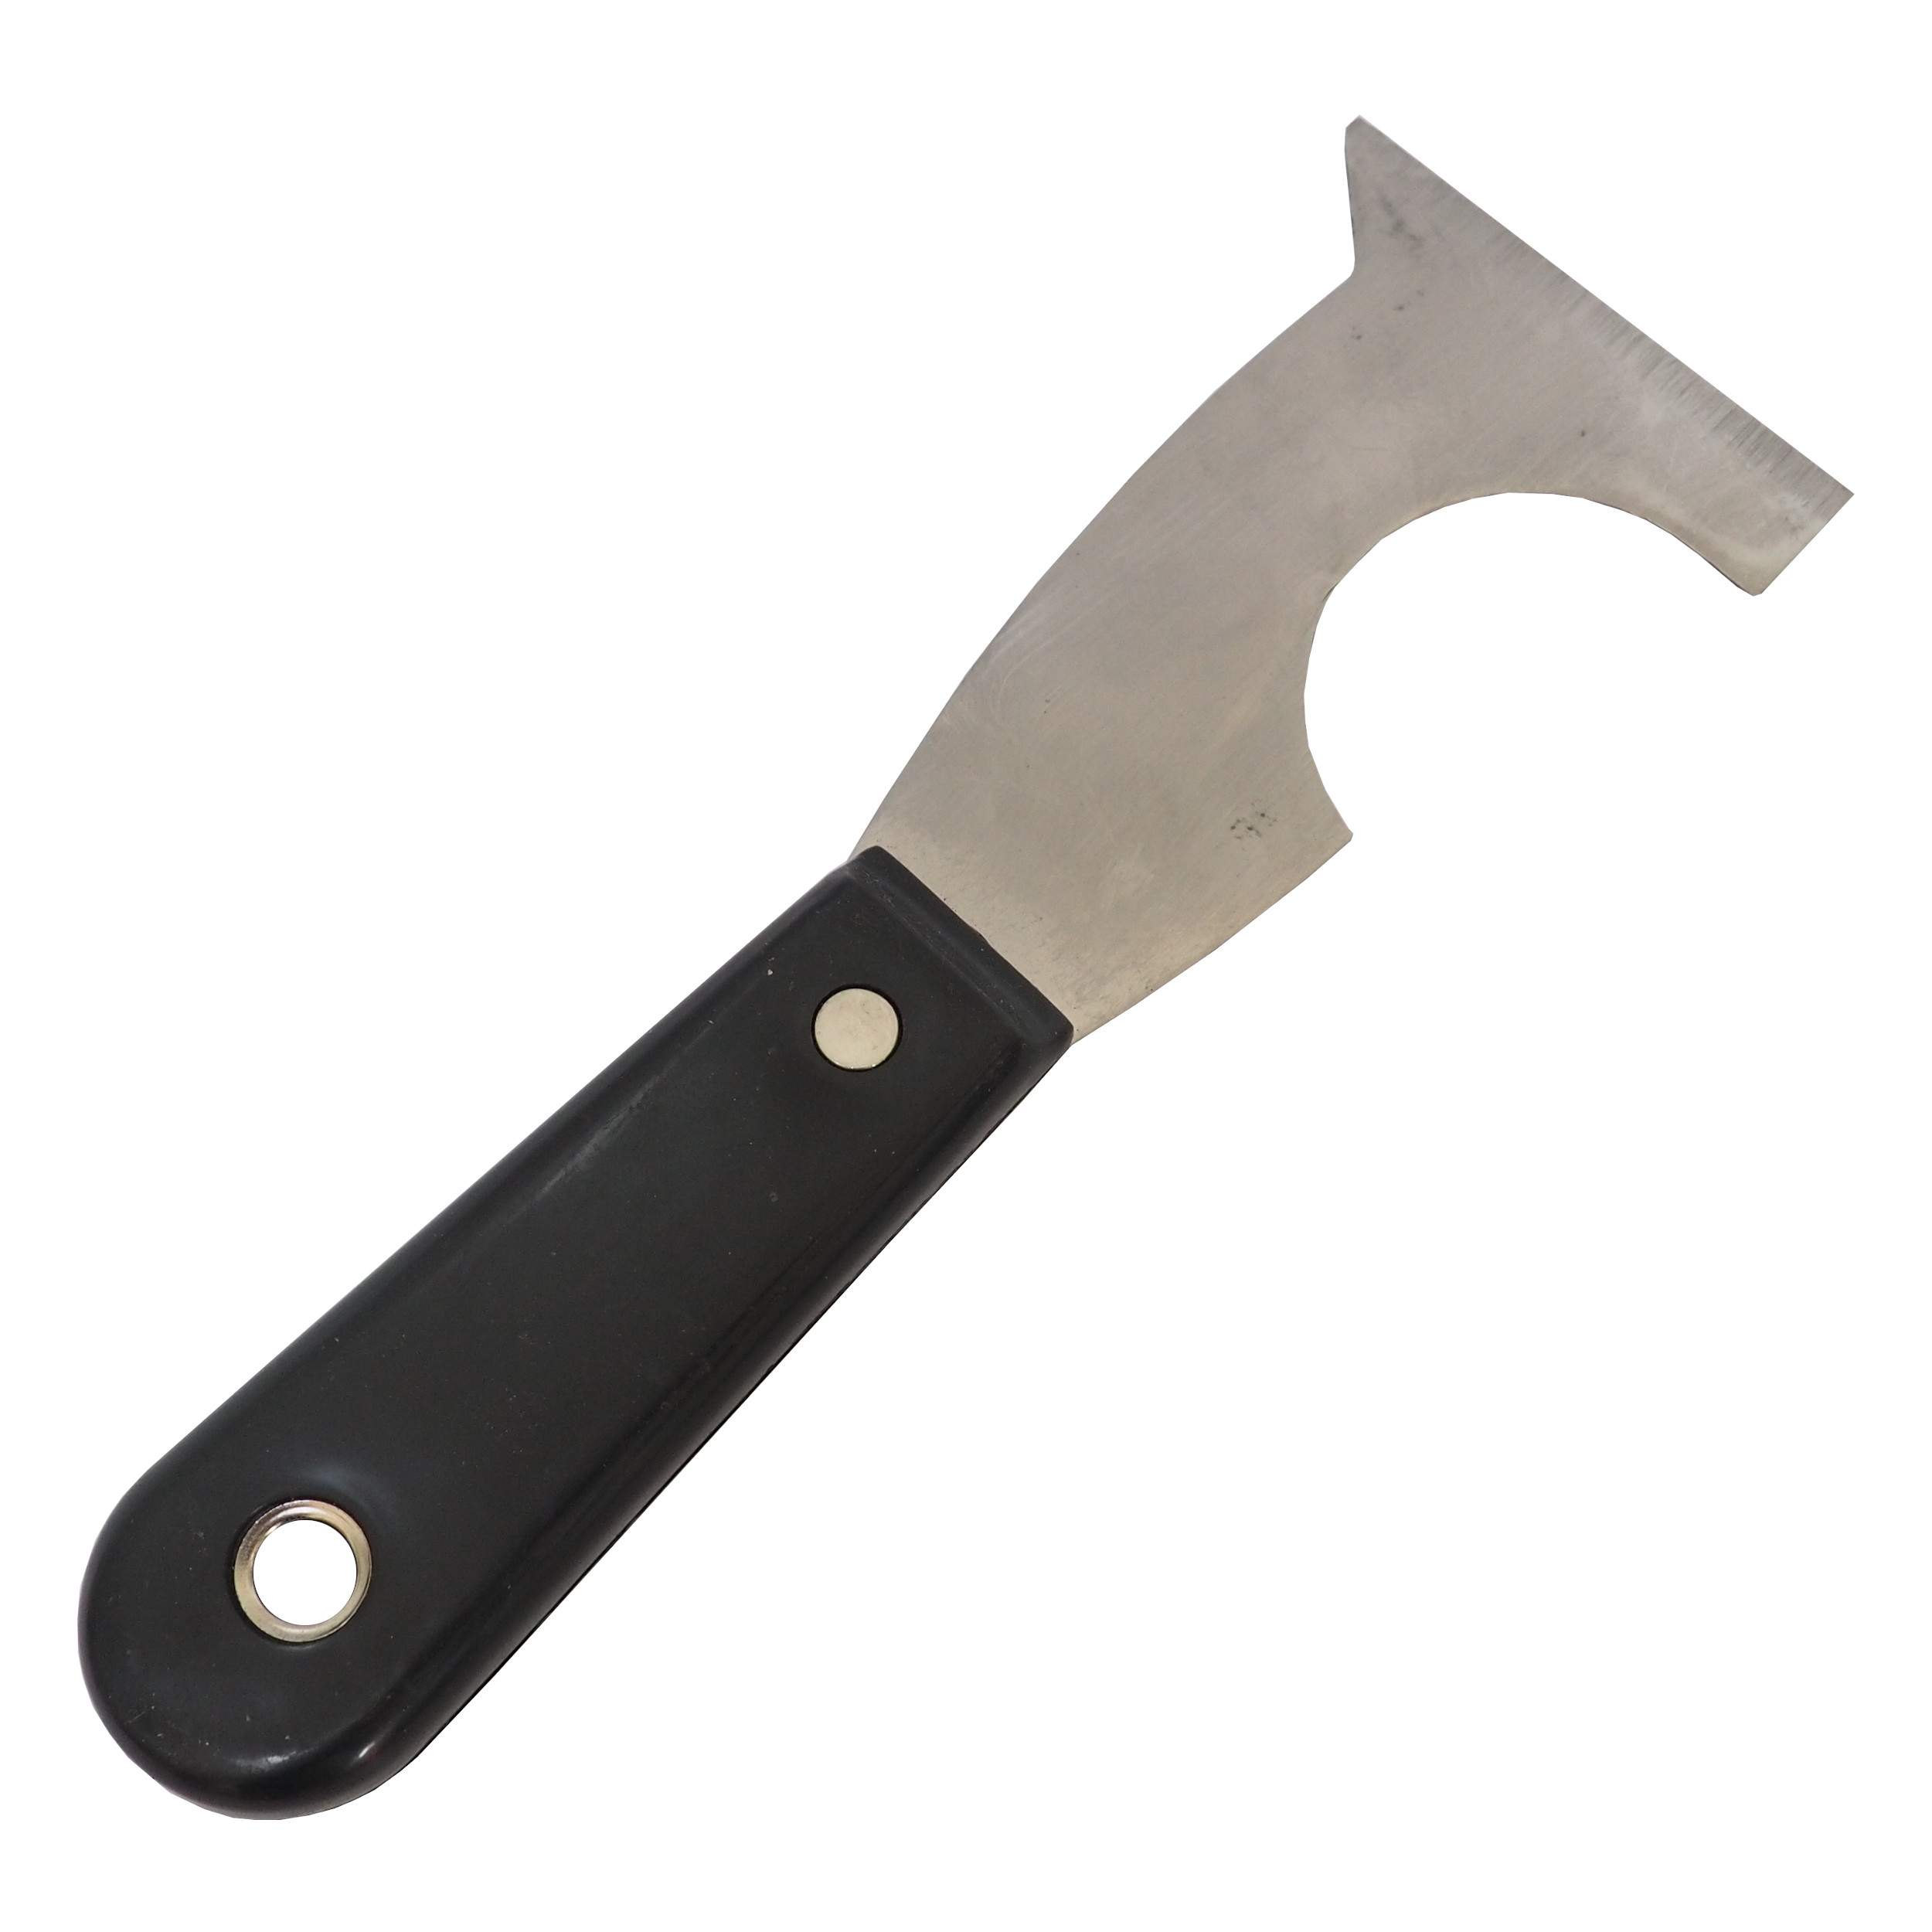 TOPTRADE špachtle chromovaná nůž tvarovaný, s plastovou,  nýtovananou rukojetí, profi 0.09 Kg TOP Sklad4 500443 595